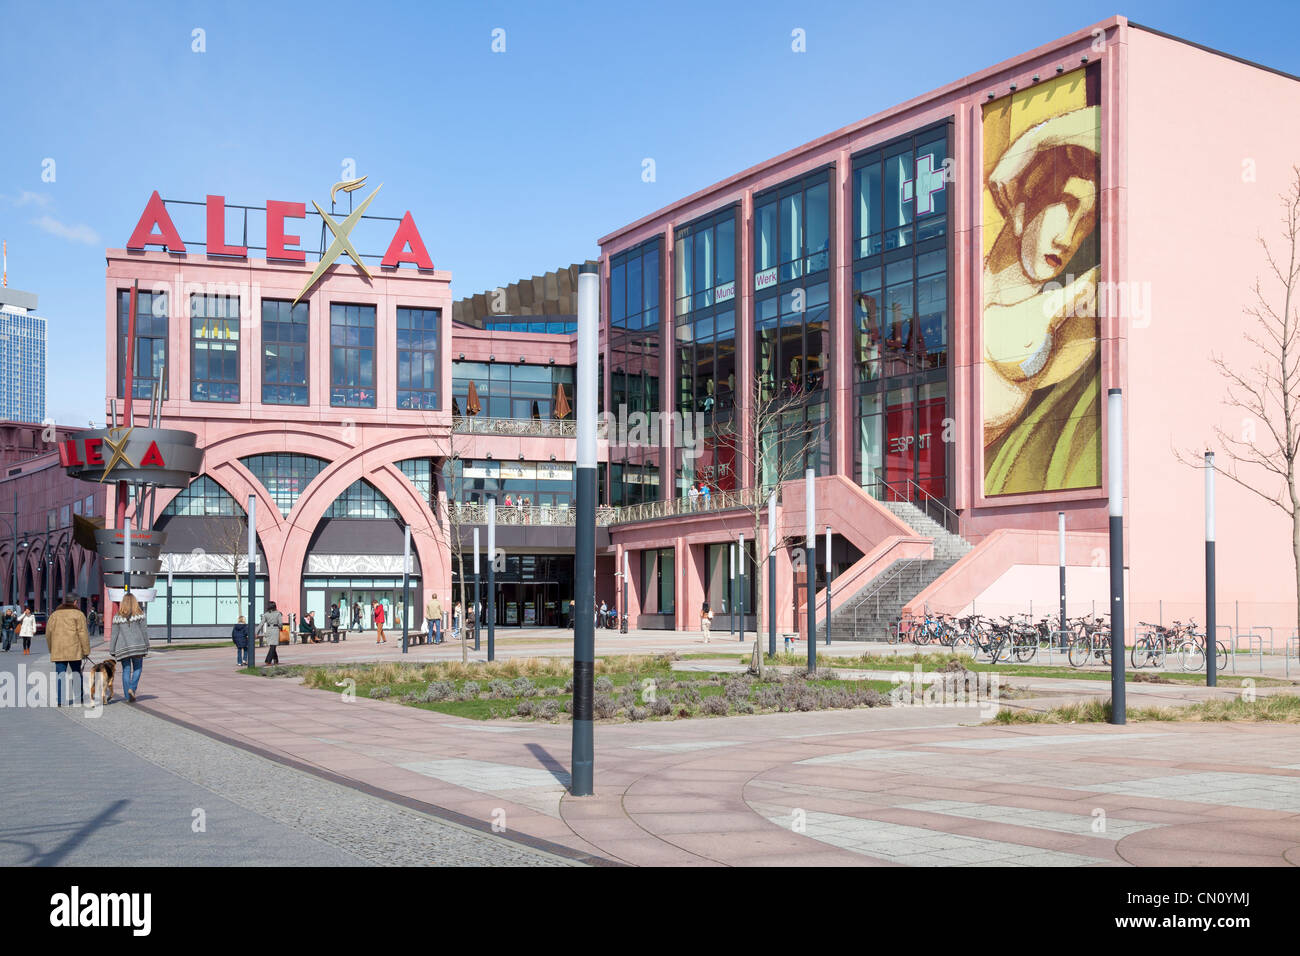 Alexa Shopping Centre, Berlin, Germany Stock Photo - Alamy